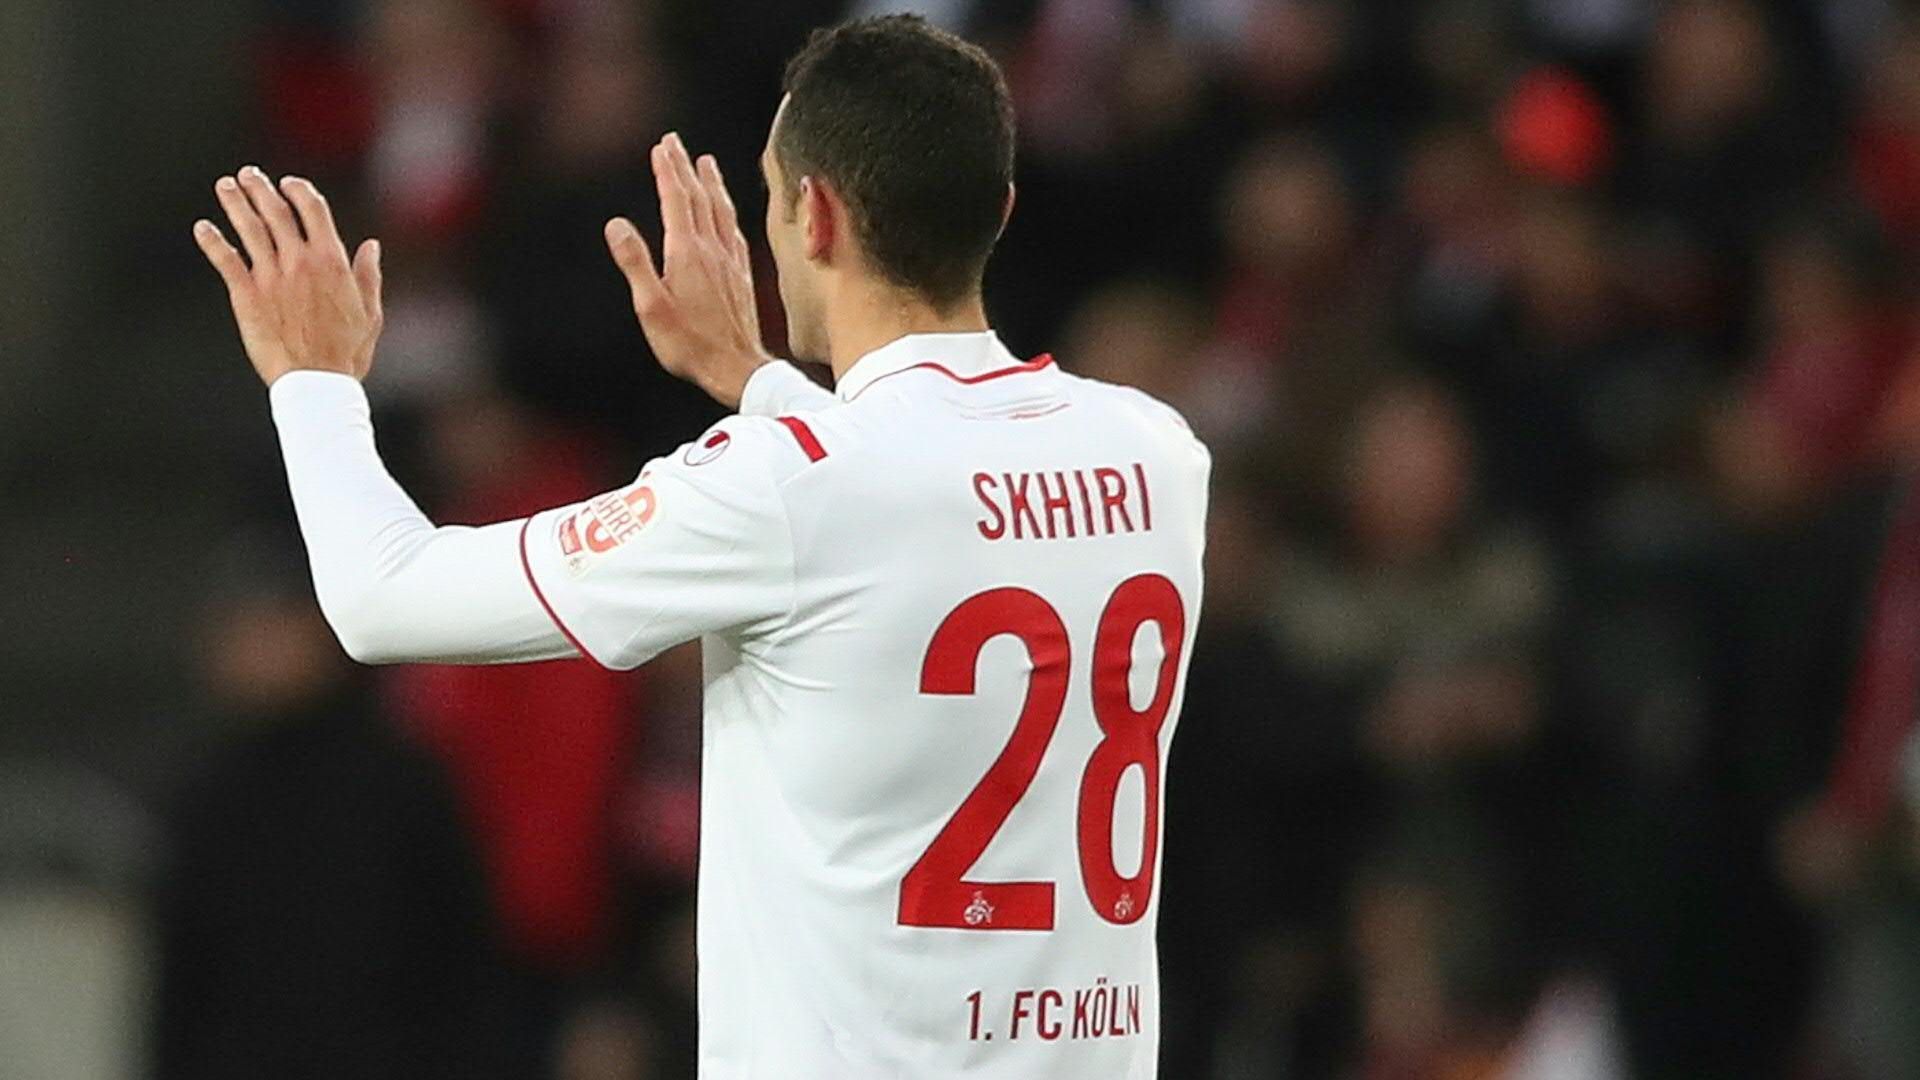 Offiziell: Schlüsselspieler Shkiri verlässt Köln